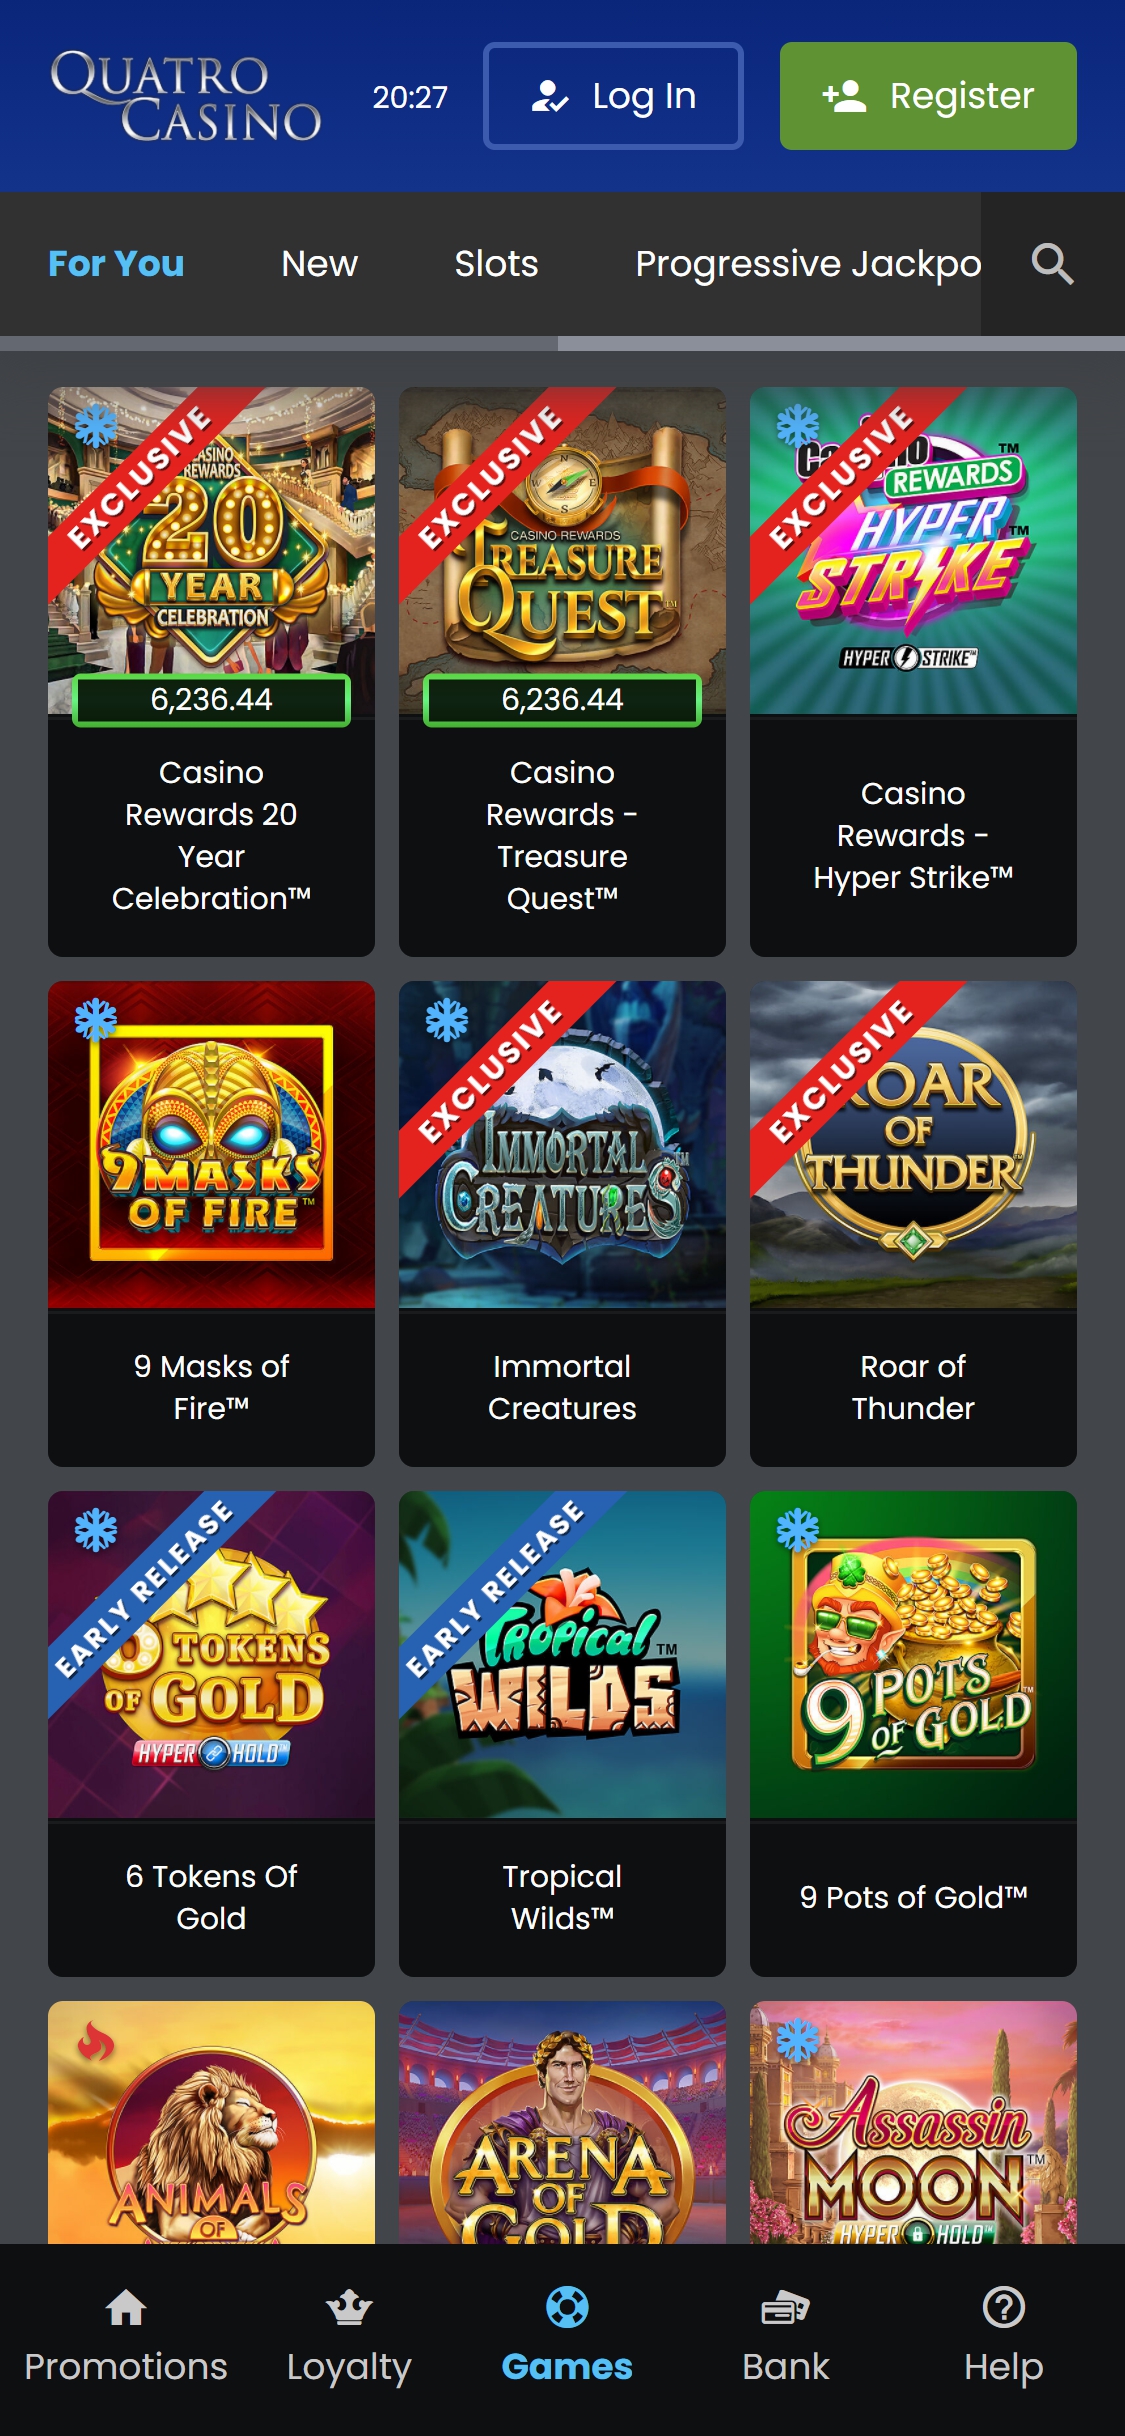 Quatro Casino Mobile Games Review